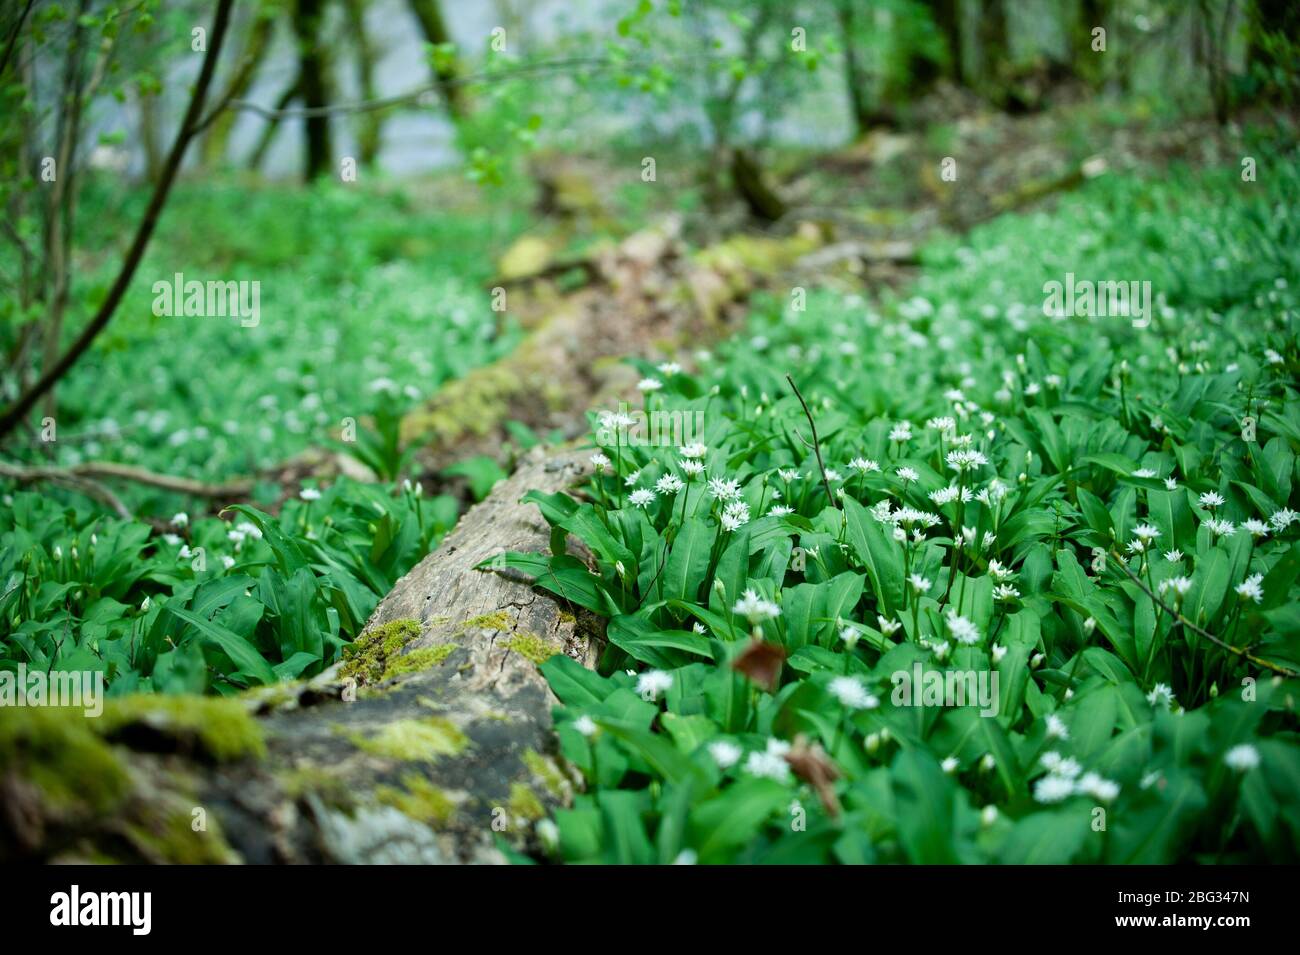 Primavera nella foresta europea. Allium ursinum conosciuto es aglio selvatico, ramsons, buckrams, aglio a foglia larga, aglio di legno, porro o aglio di orso. Foto Stock